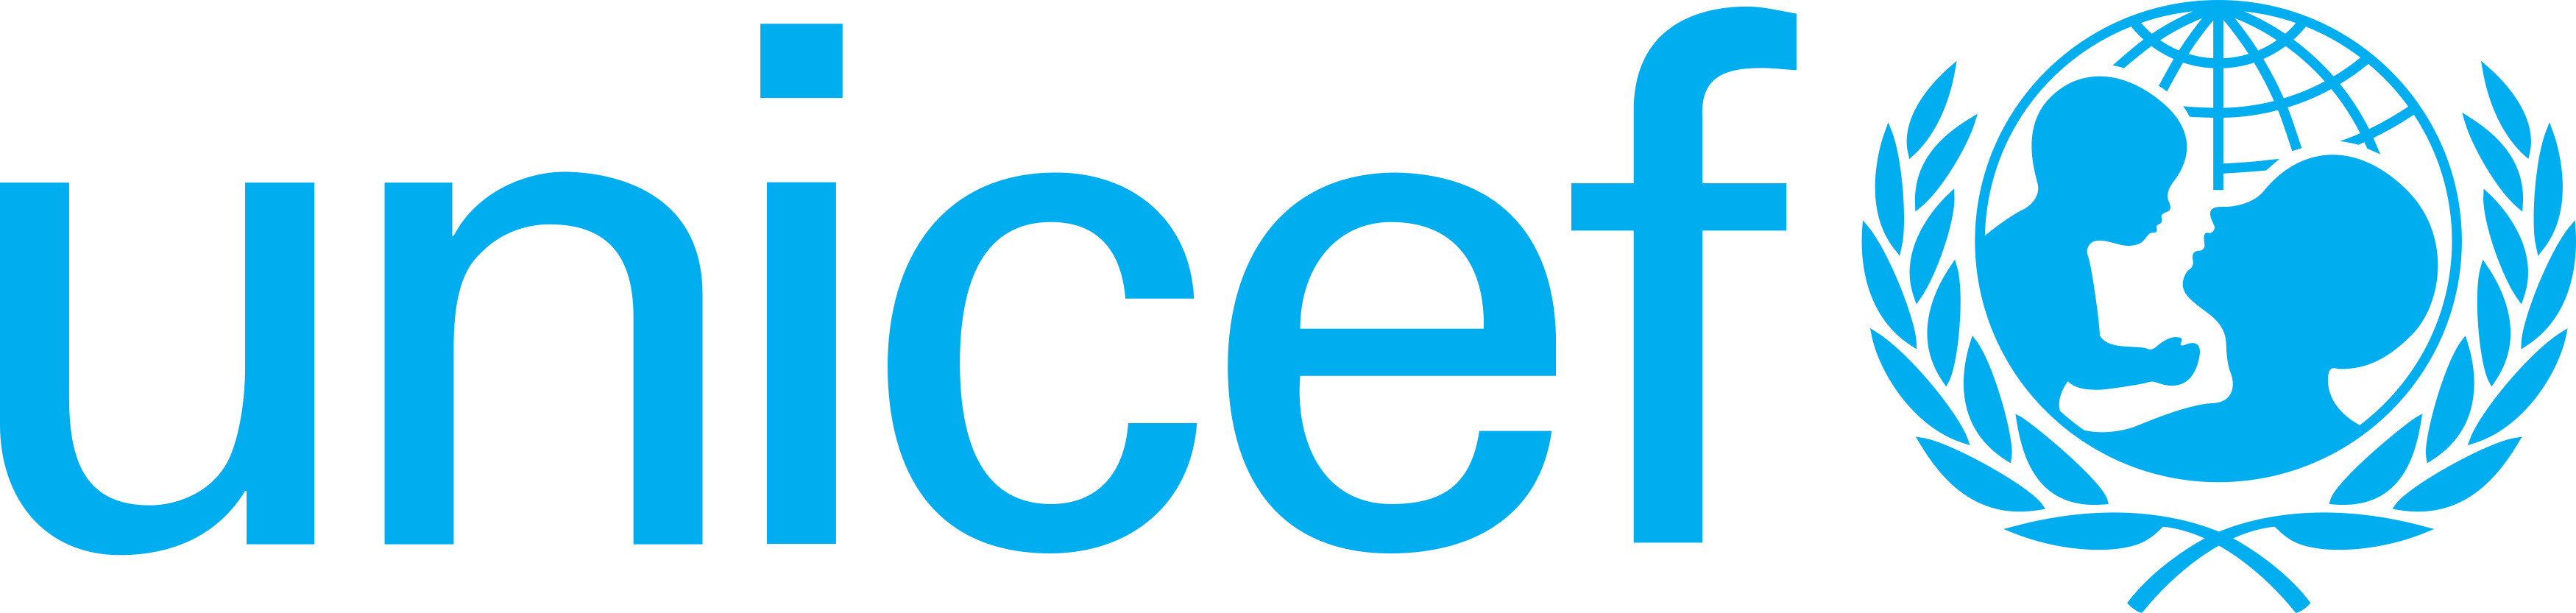 Unicef Logo. 